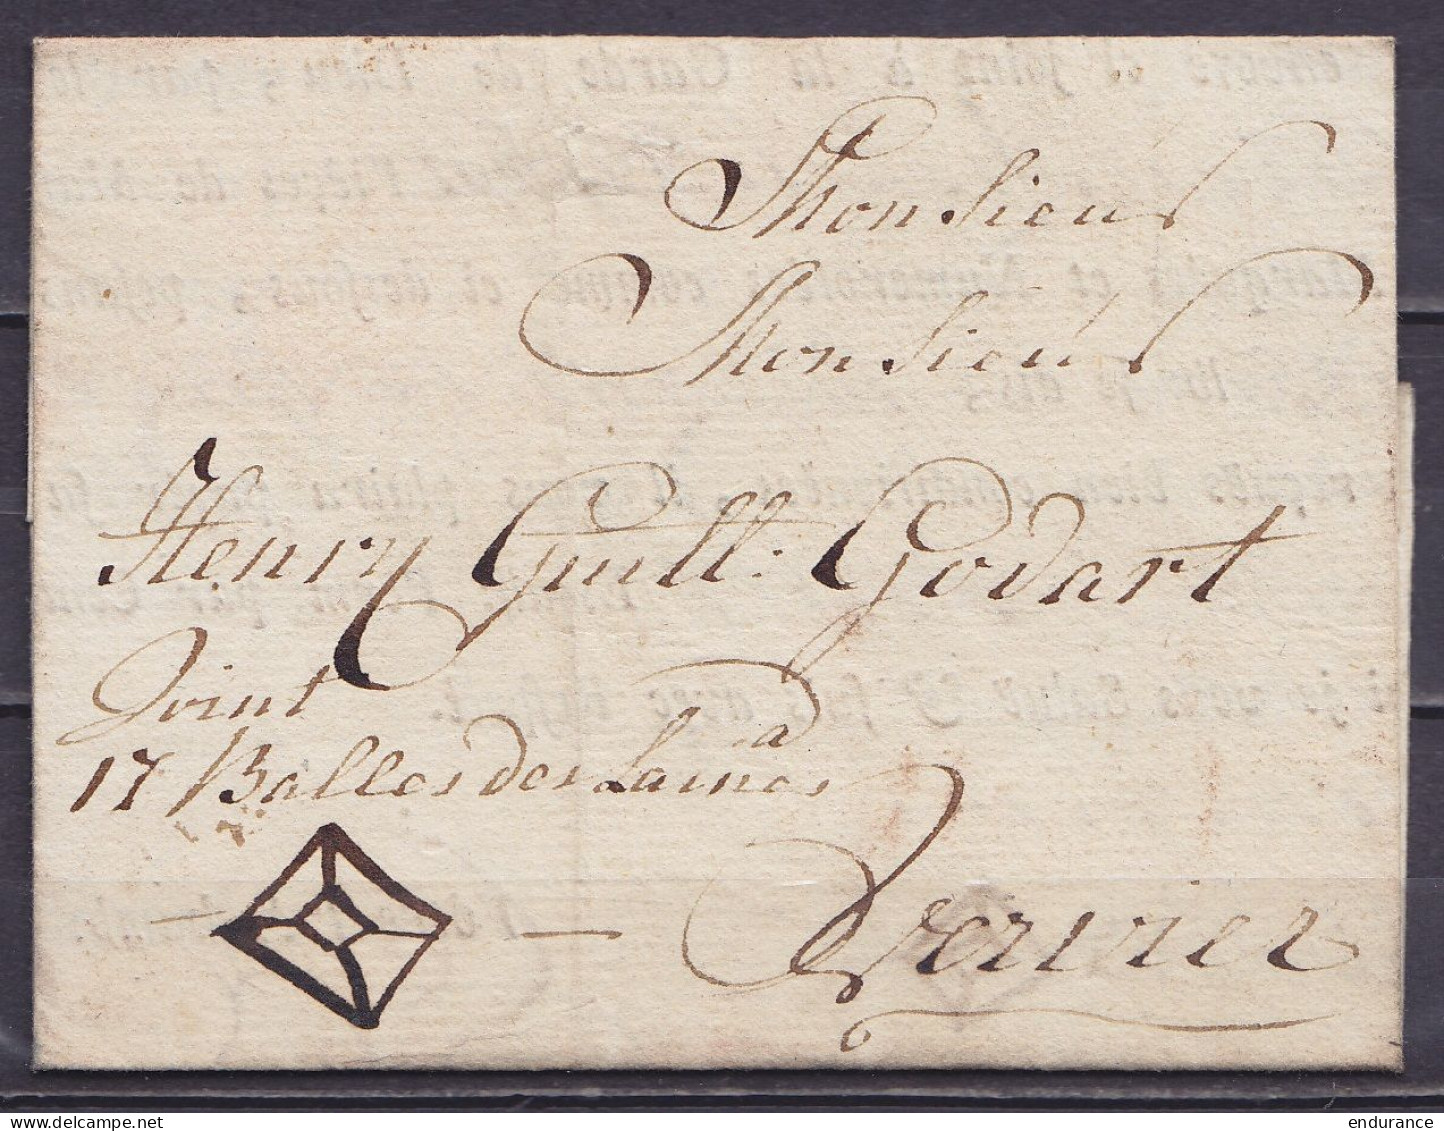 L. (accompagnant Des Colis) Datée 23 Novembre 1786 De BOIS-LE-DUC Pour VERVIERS - Man. "joint 17 Balles De Laines" - 1714-1794 (Pays-Bas Autrichiens)